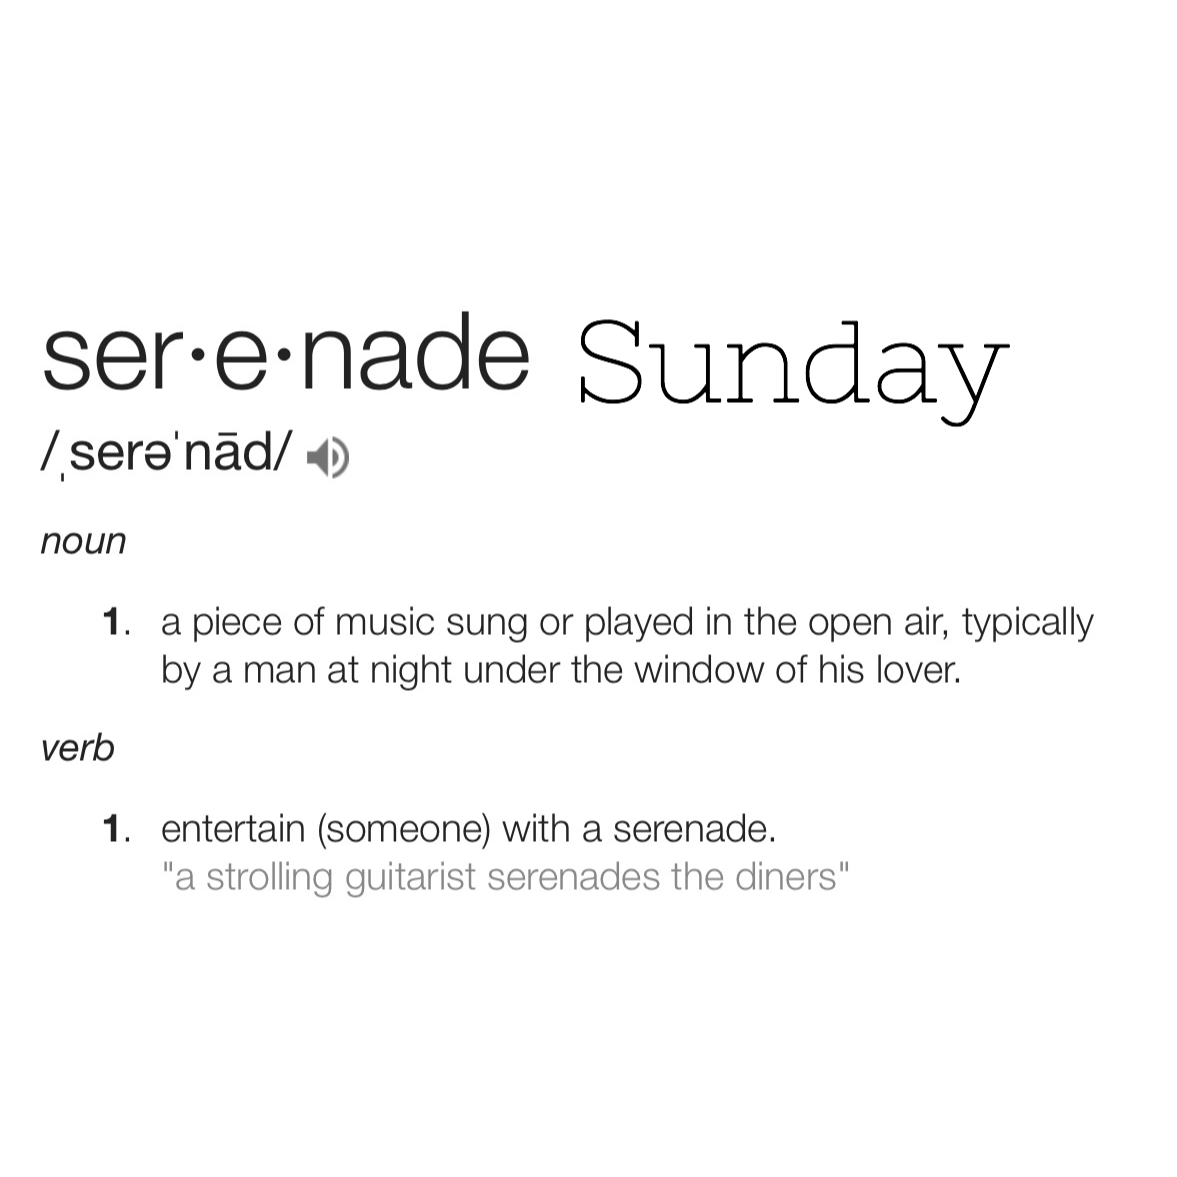 Serenade Sunday 